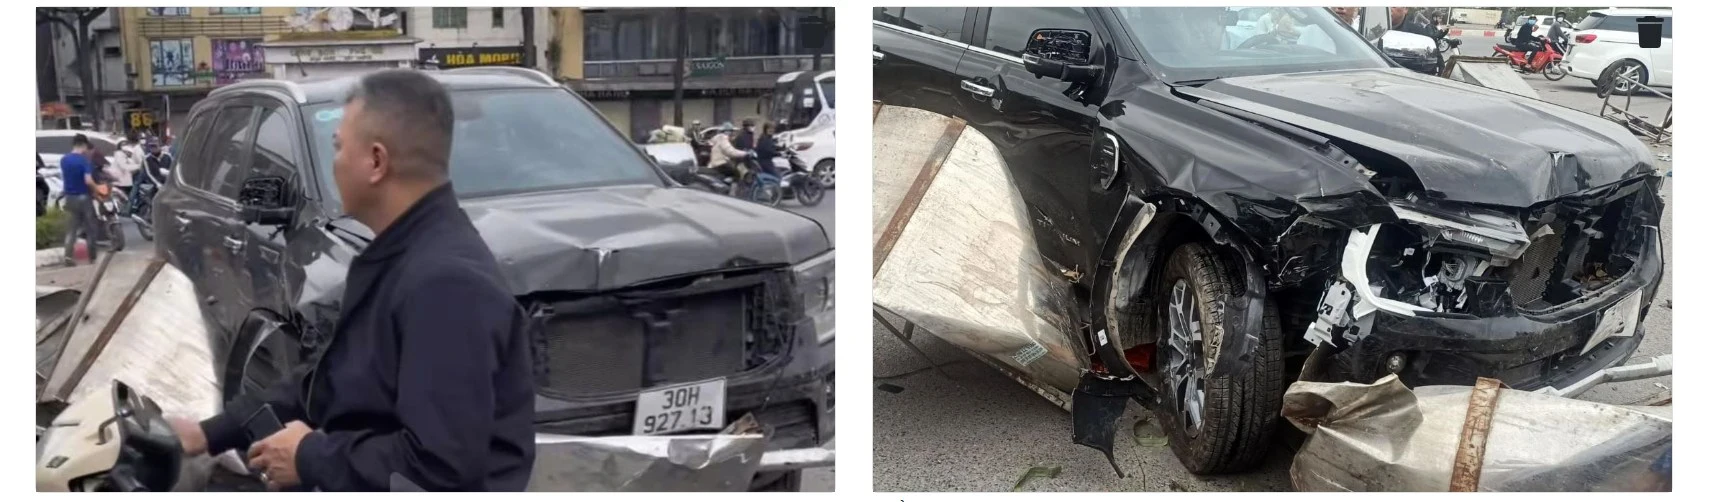 Rao Toyota Vios 2014 zin cả xe giá 230 triệu, người bán bị nghi ngờ lừa dối sau loạt ảnh xe tai nạn nát bét với biển số giống hệt - Ảnh 6.